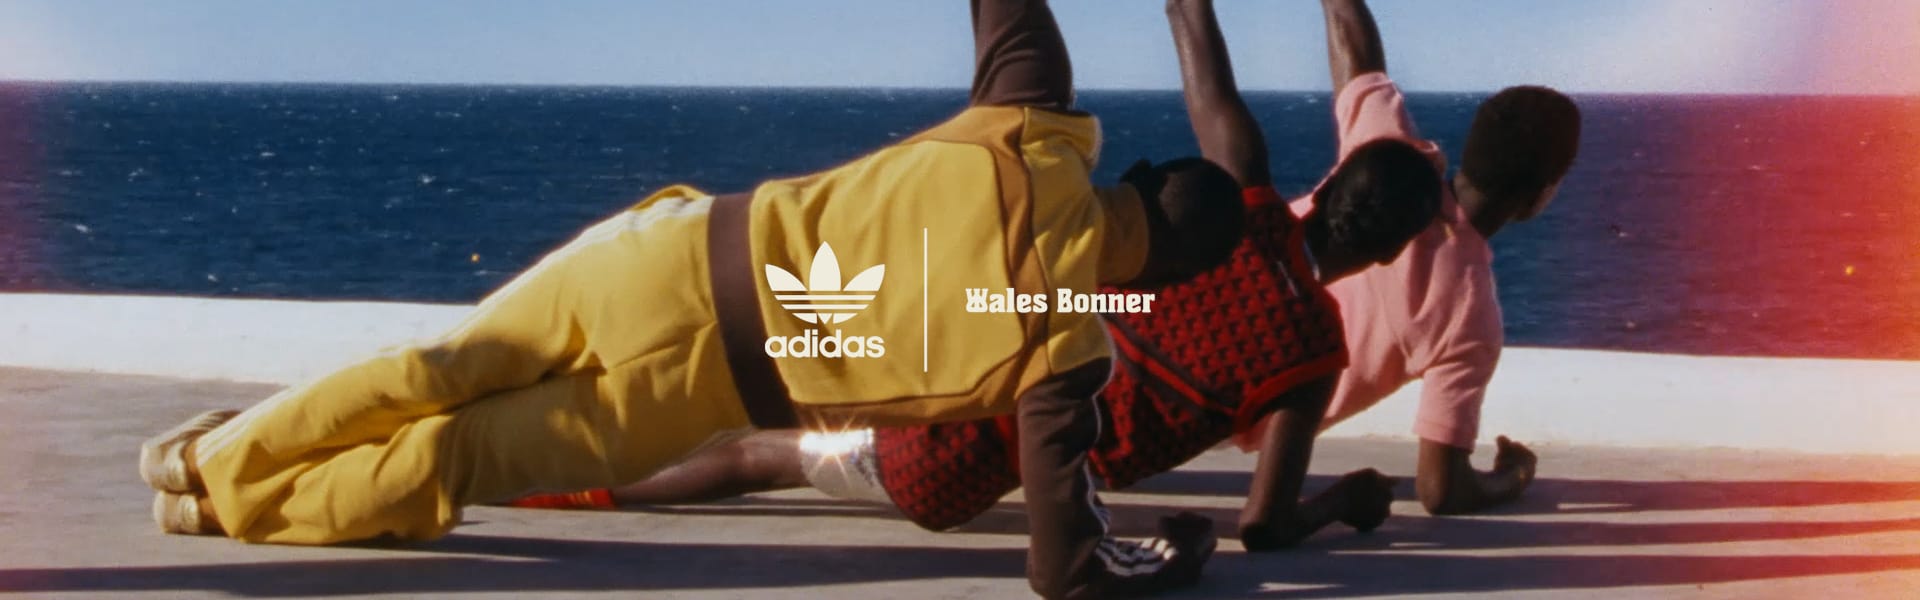 adidas Originals by Wales Bonner | adidas UK